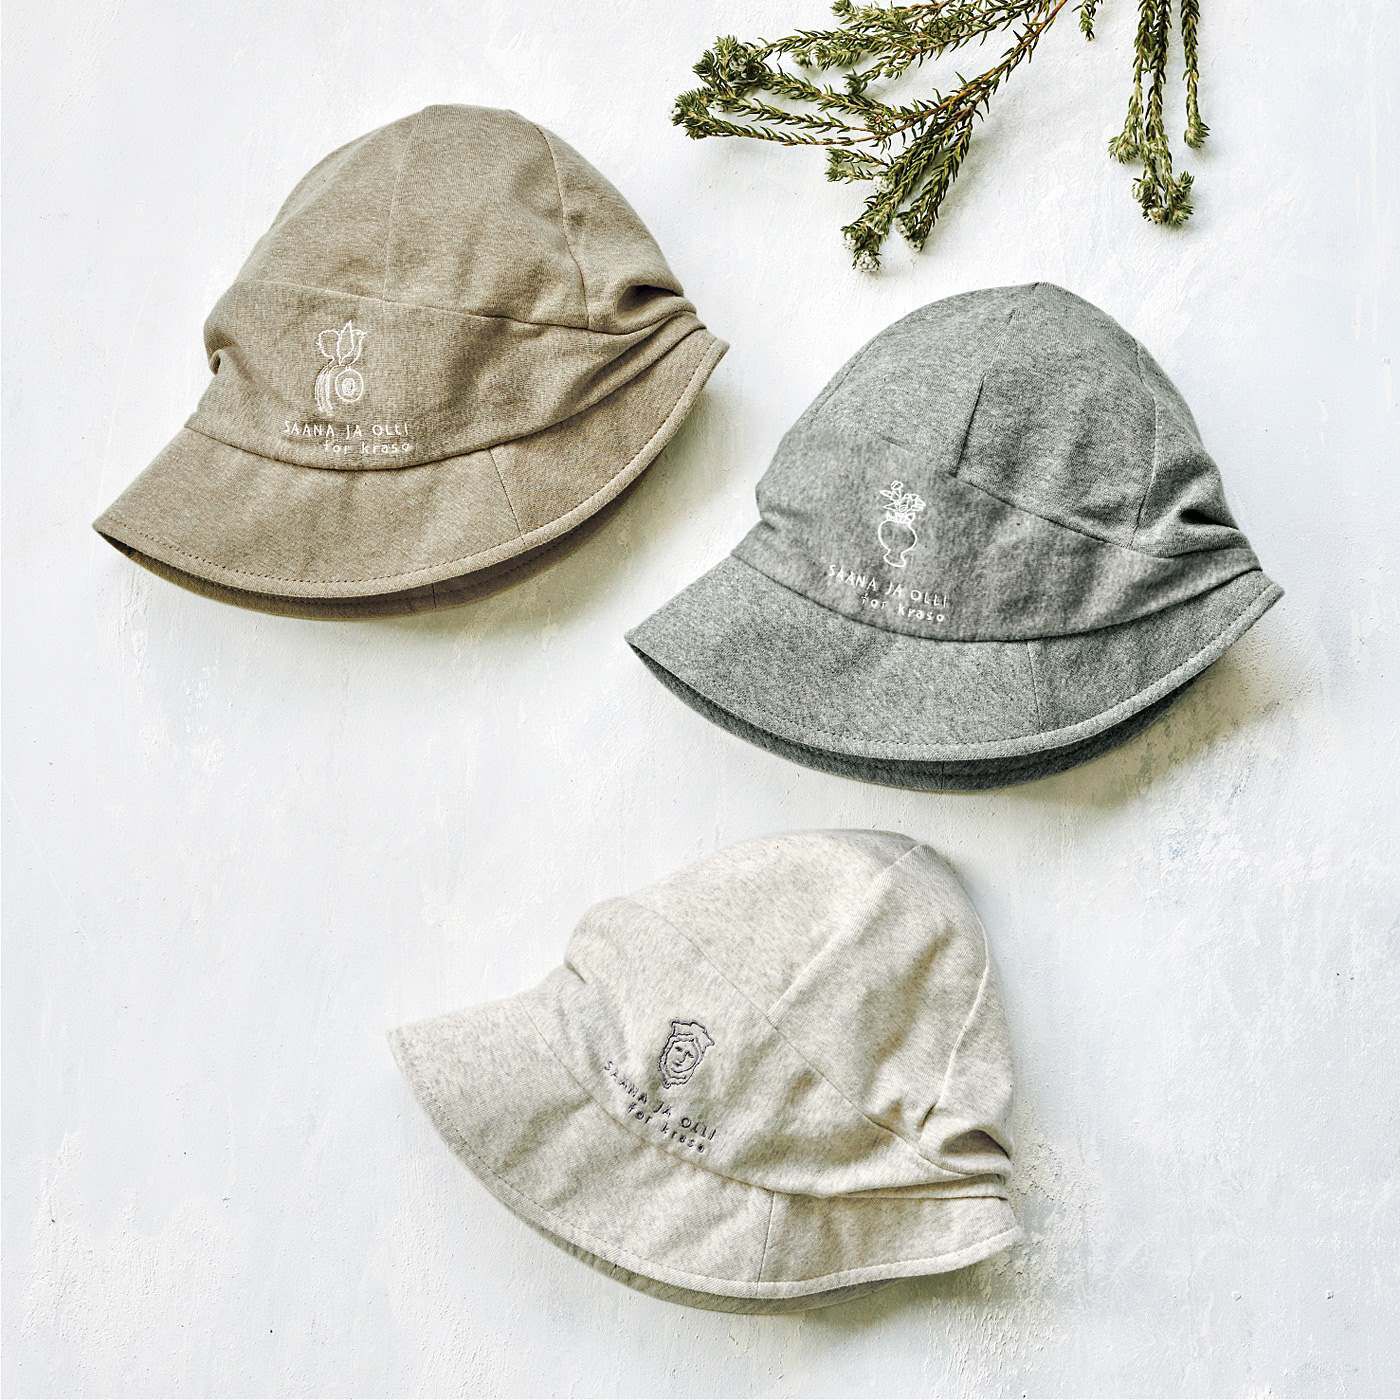 SAANA JA OLLI|サーナ ヤ オッリ　オーガニックコットン100％のすこやかな肌心地にすっぽり包まれる　UVクロッシェ帽子の会